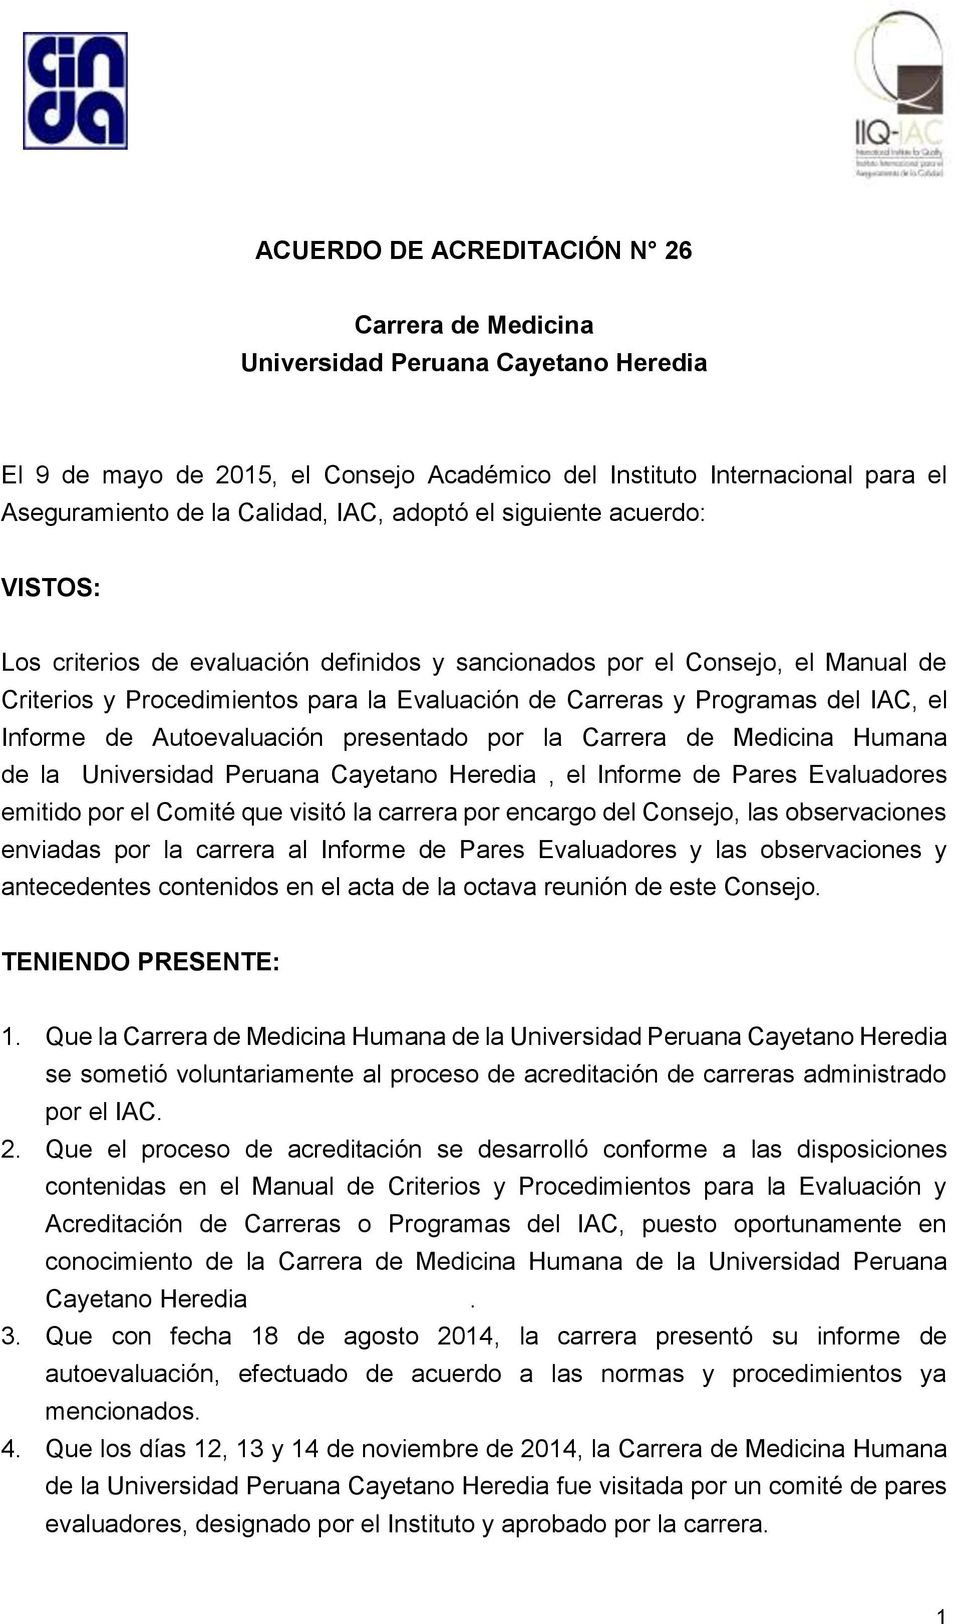 Informe de Autoevaluación presentado por la Carrera de Medicina Humana de la Universidad Peruana Cayetano Heredia, el Informe de Pares Evaluadores emitido por el Comité que visitó la carrera por